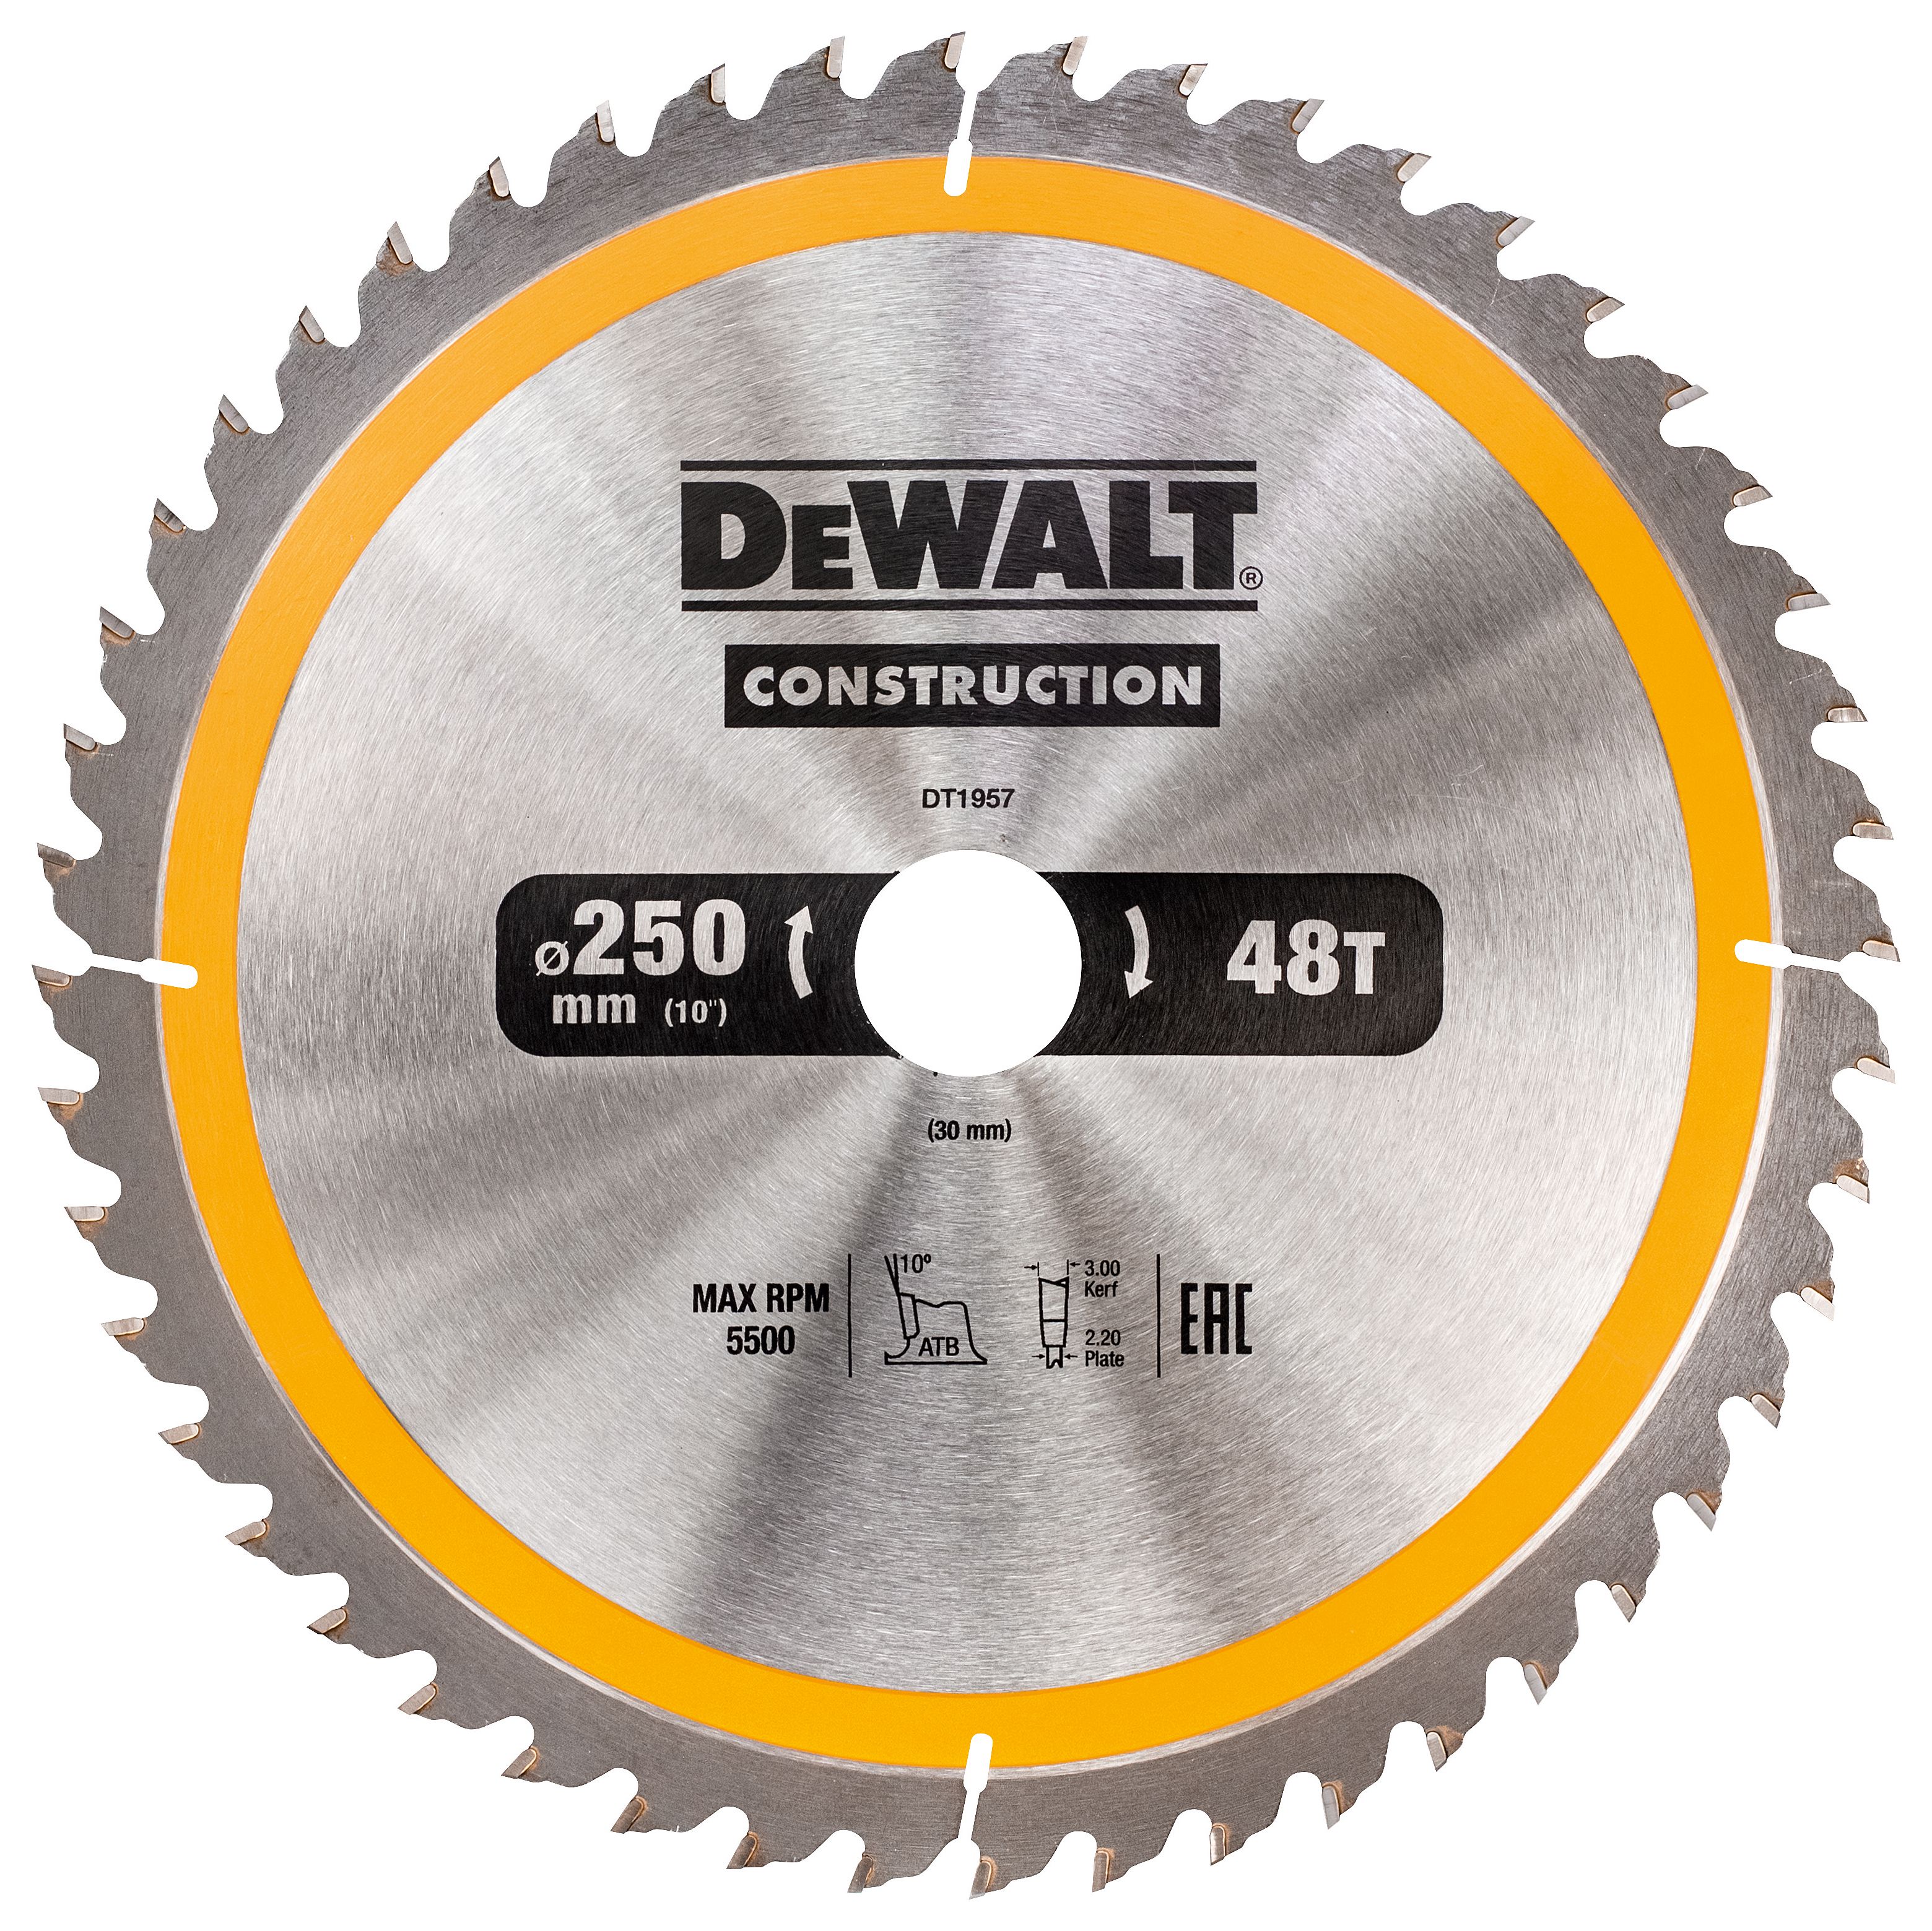 Image of DEWALT DT1957-QZ 48 Teeth Construction Smooth Cut Circular Saw Blade - 250 x 30mm